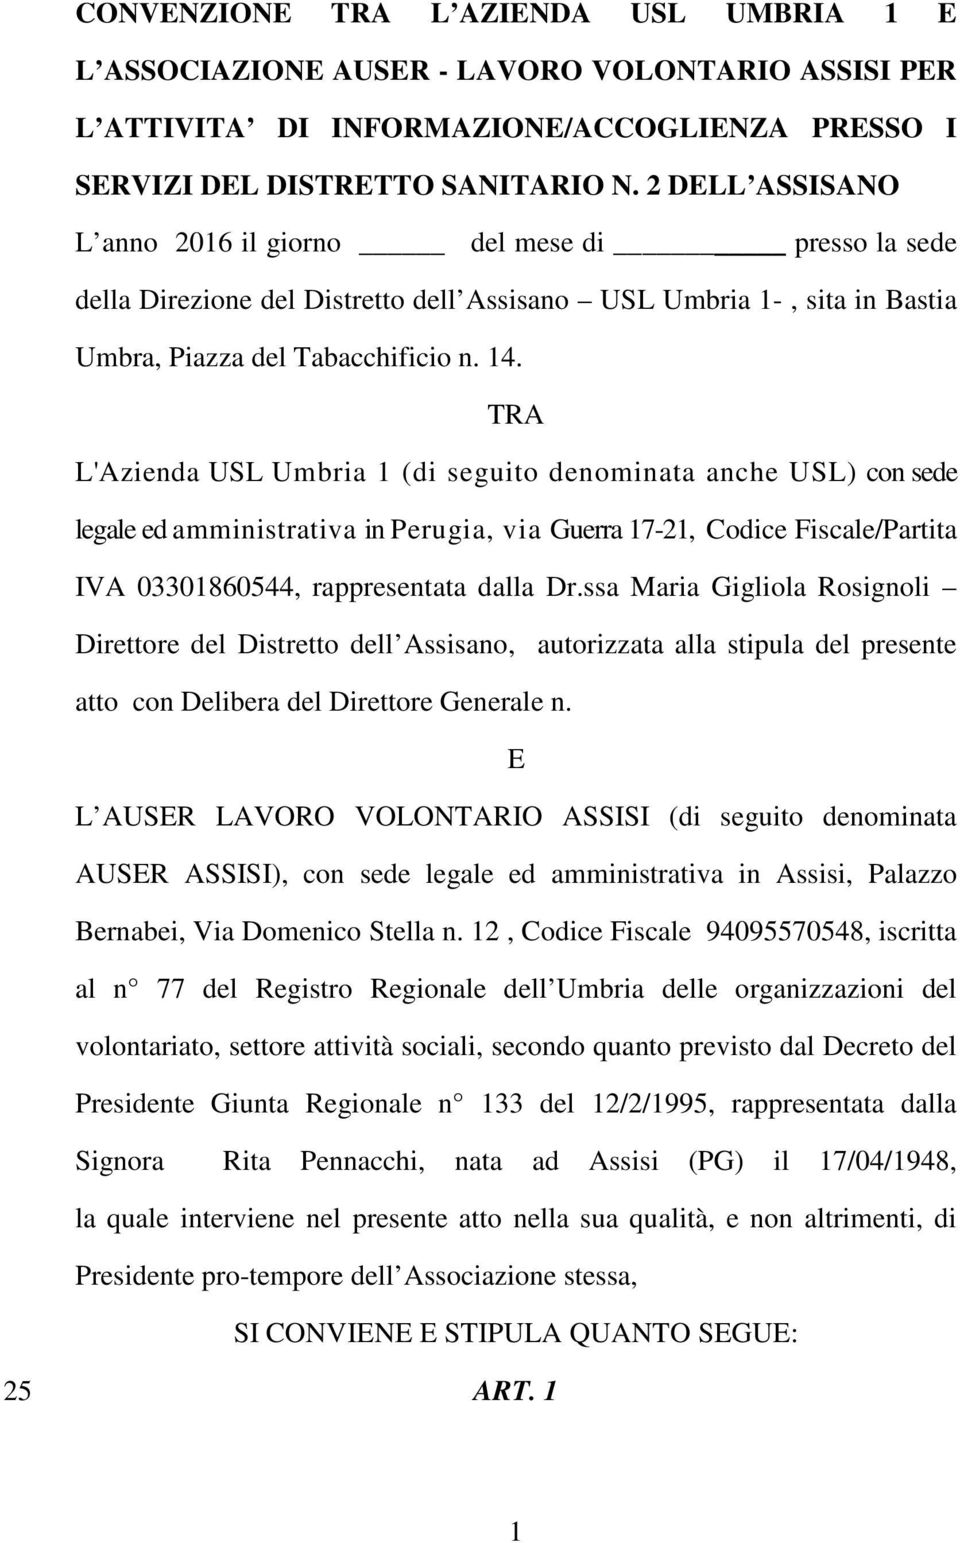 TRA L'Azienda USL Umbria 1 (di seguito denominata anche USL) con sede legale ed amministrativa in Perugia, via Guerra 17-21, Codice Fiscale/Partita IVA 03301860544, rappresentata dalla Dr.